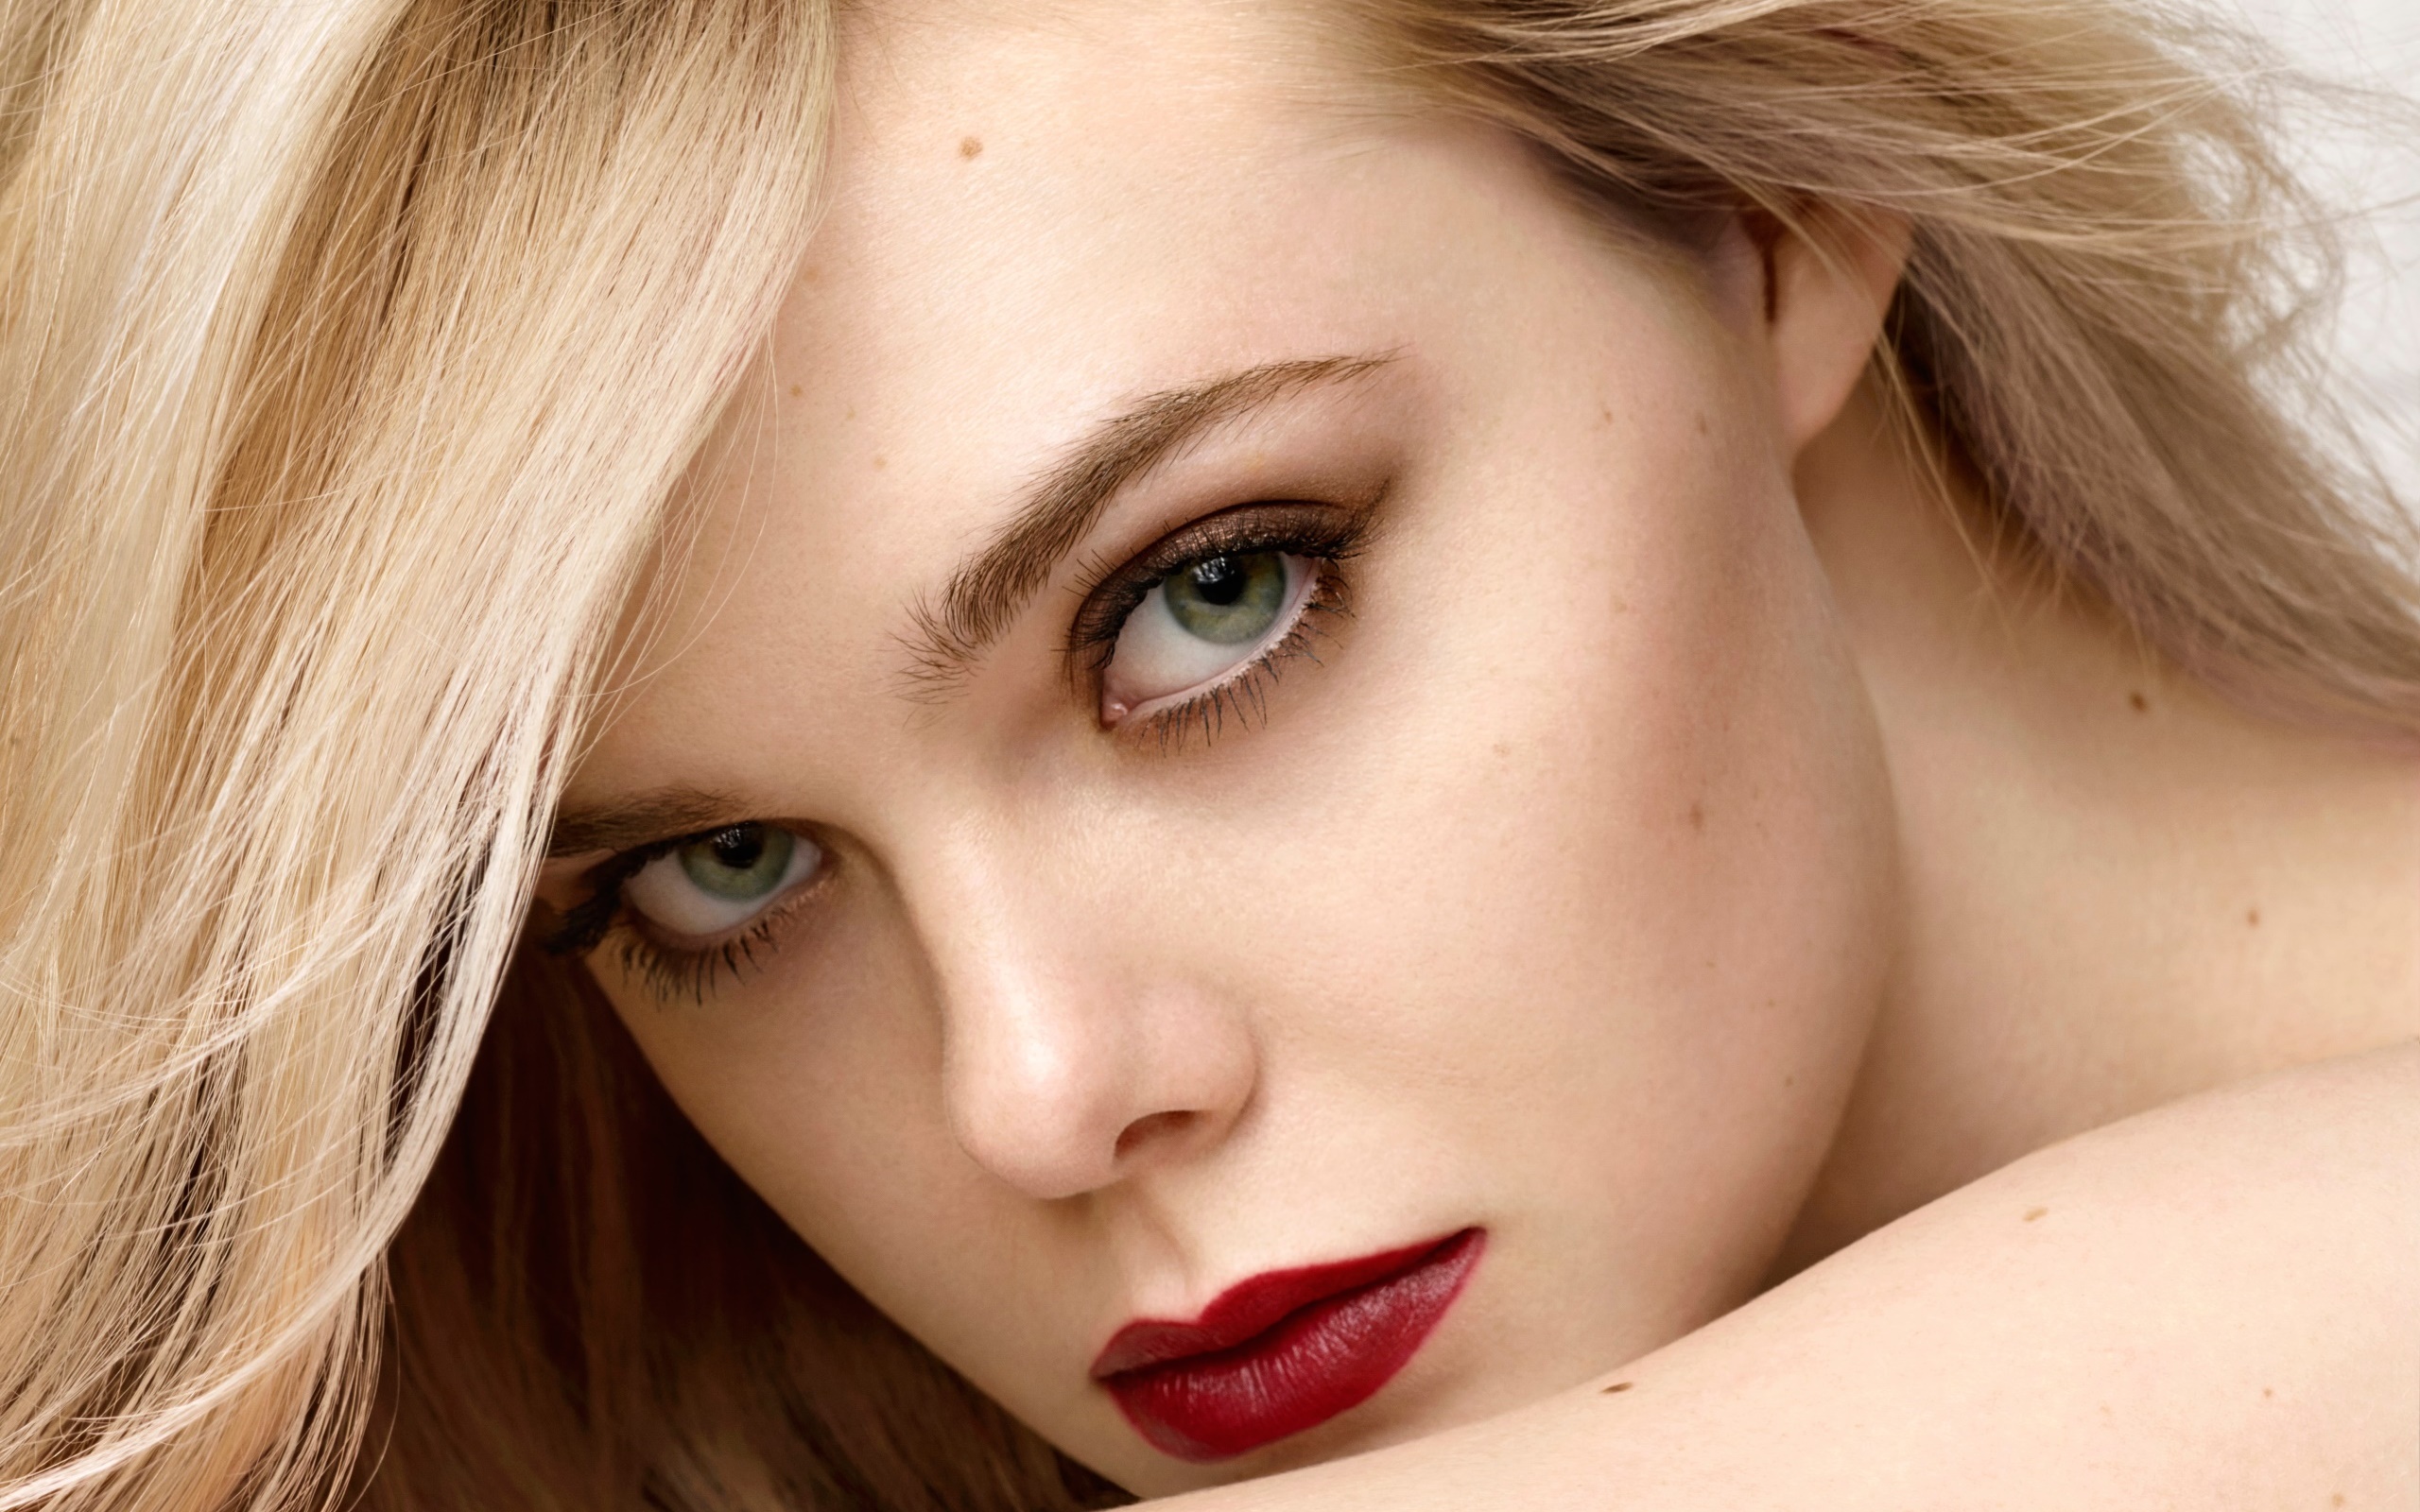 People 2560x1600 makeup red lipstick portrait face women Elle Fanning blonde actress celebrity closeup